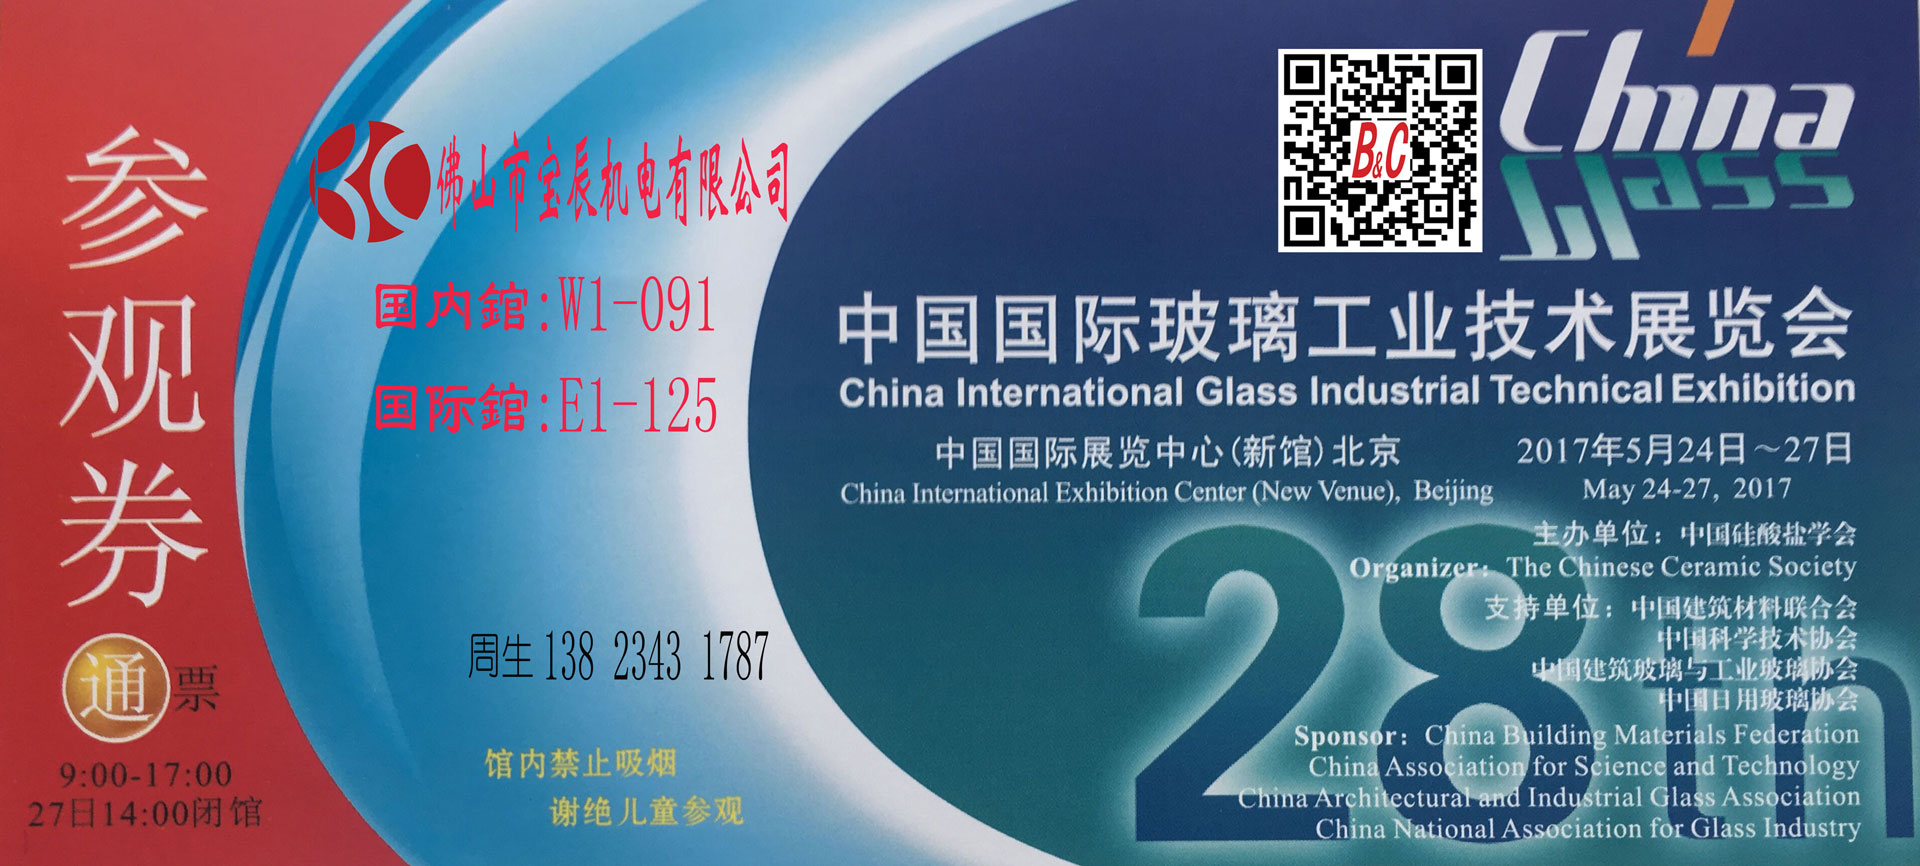 佛山宝辰机电参加北京第28届中国国际玻璃工业技术展览会